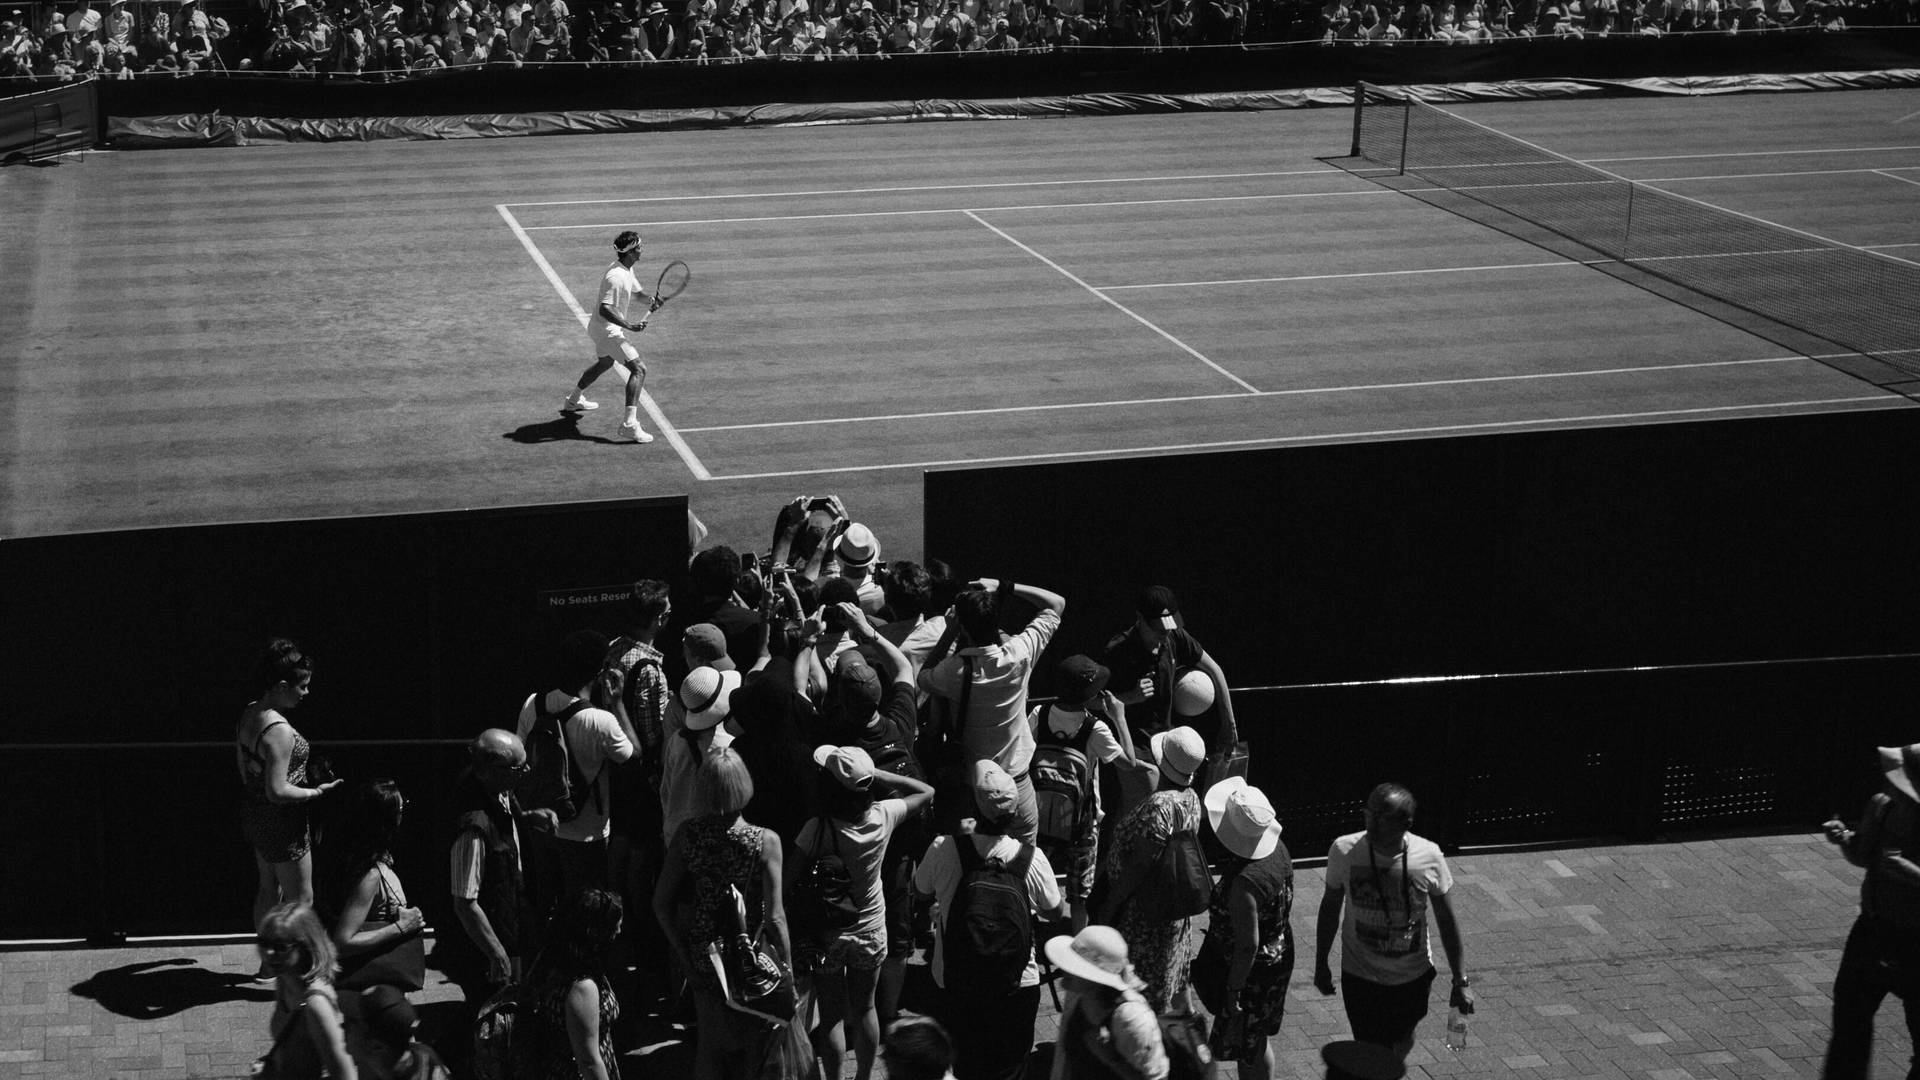 Fotografíaen Escala De Grises De Jugador De Tenis De Wimbledon. Fondo de pantalla